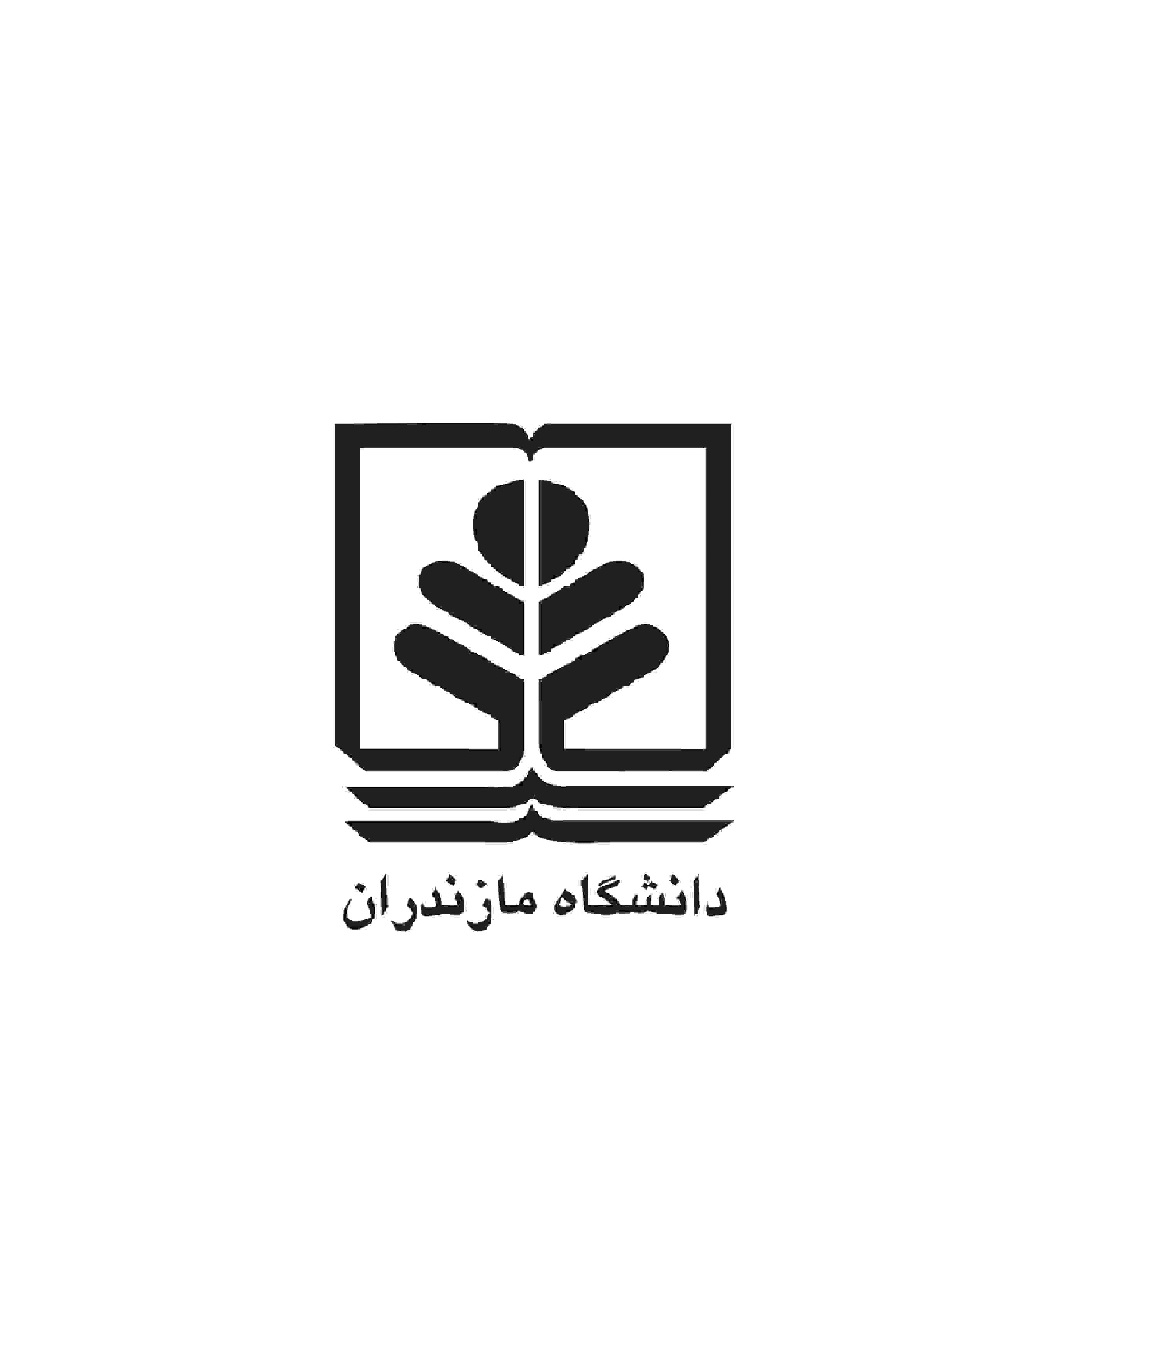 پیوستن دانشگاه مازندران به حامیان علمی